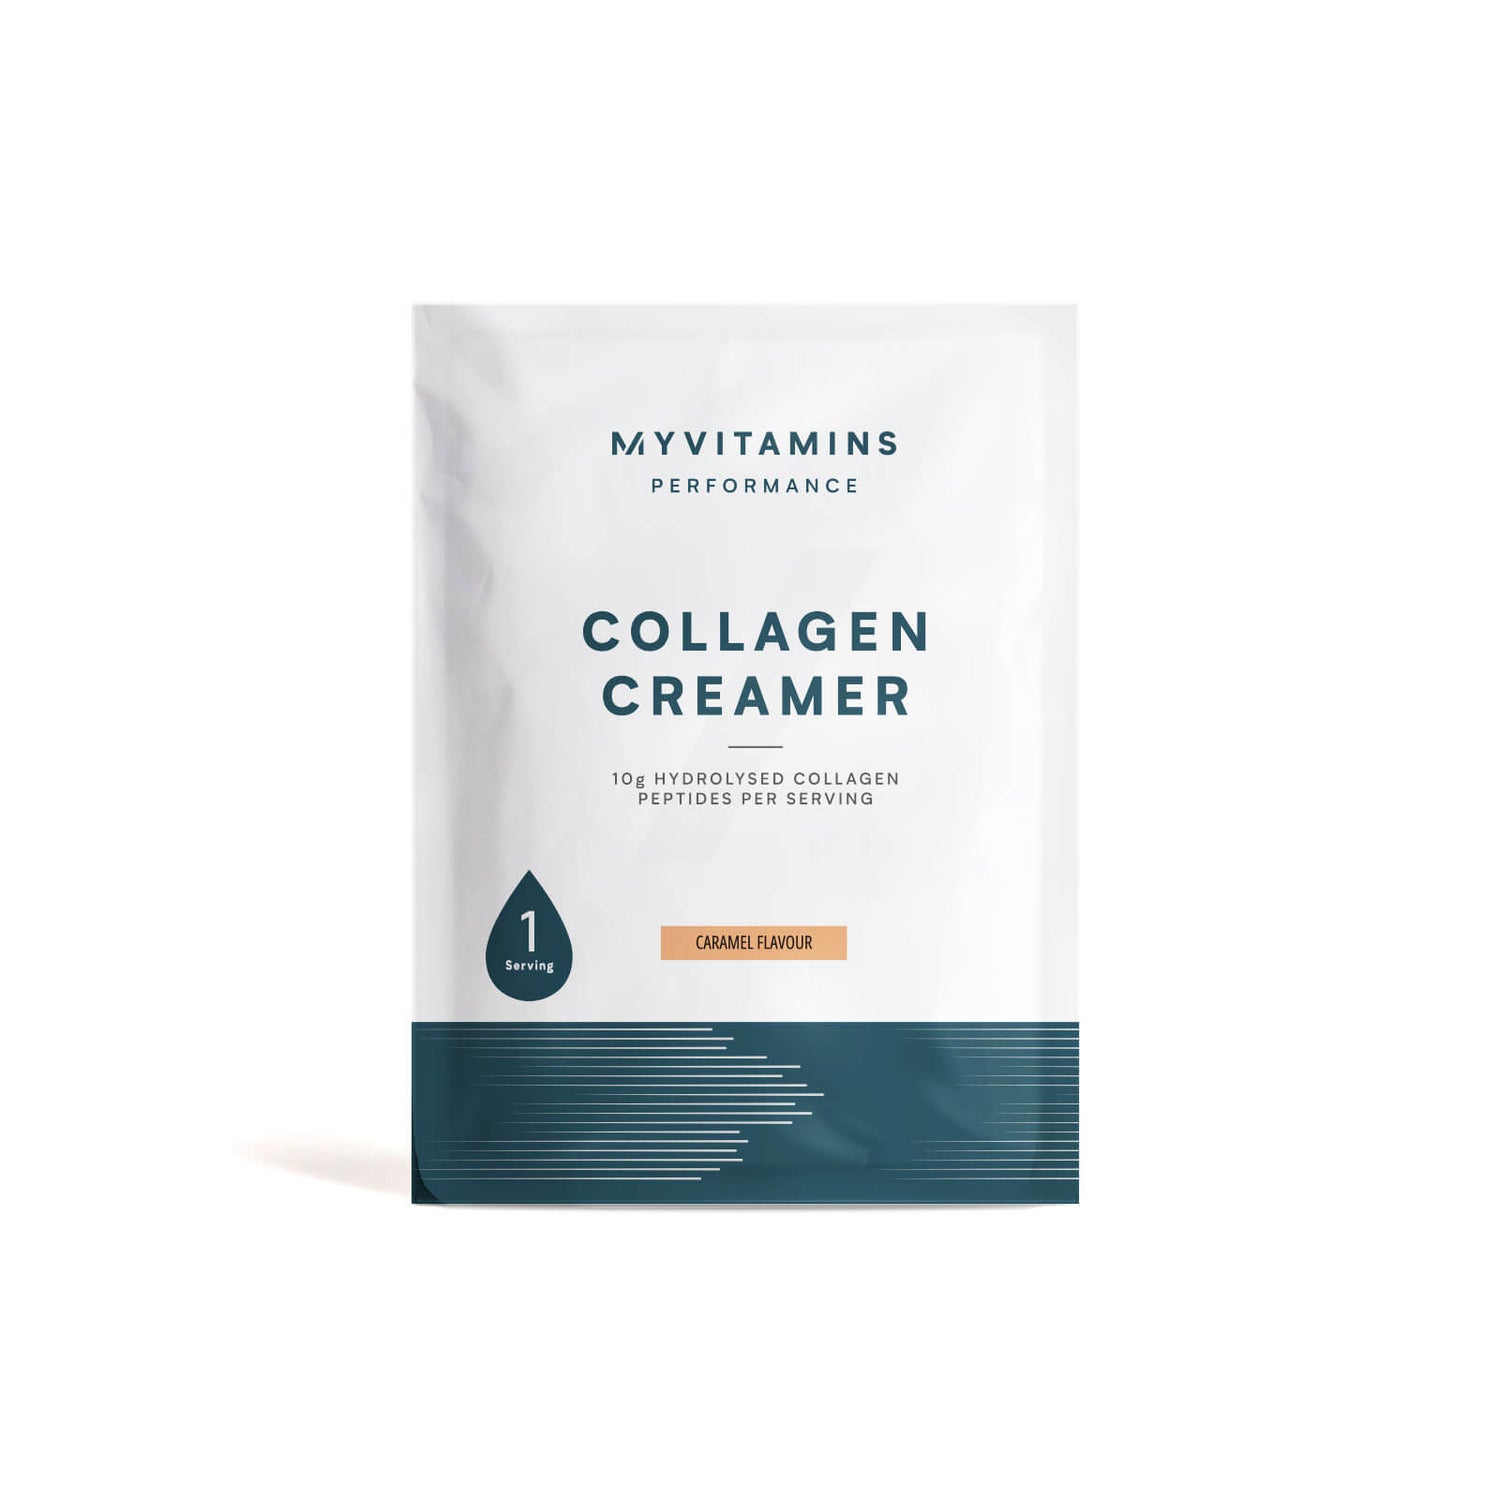 Collagen Creamer (Sample) - 14g - Caramel